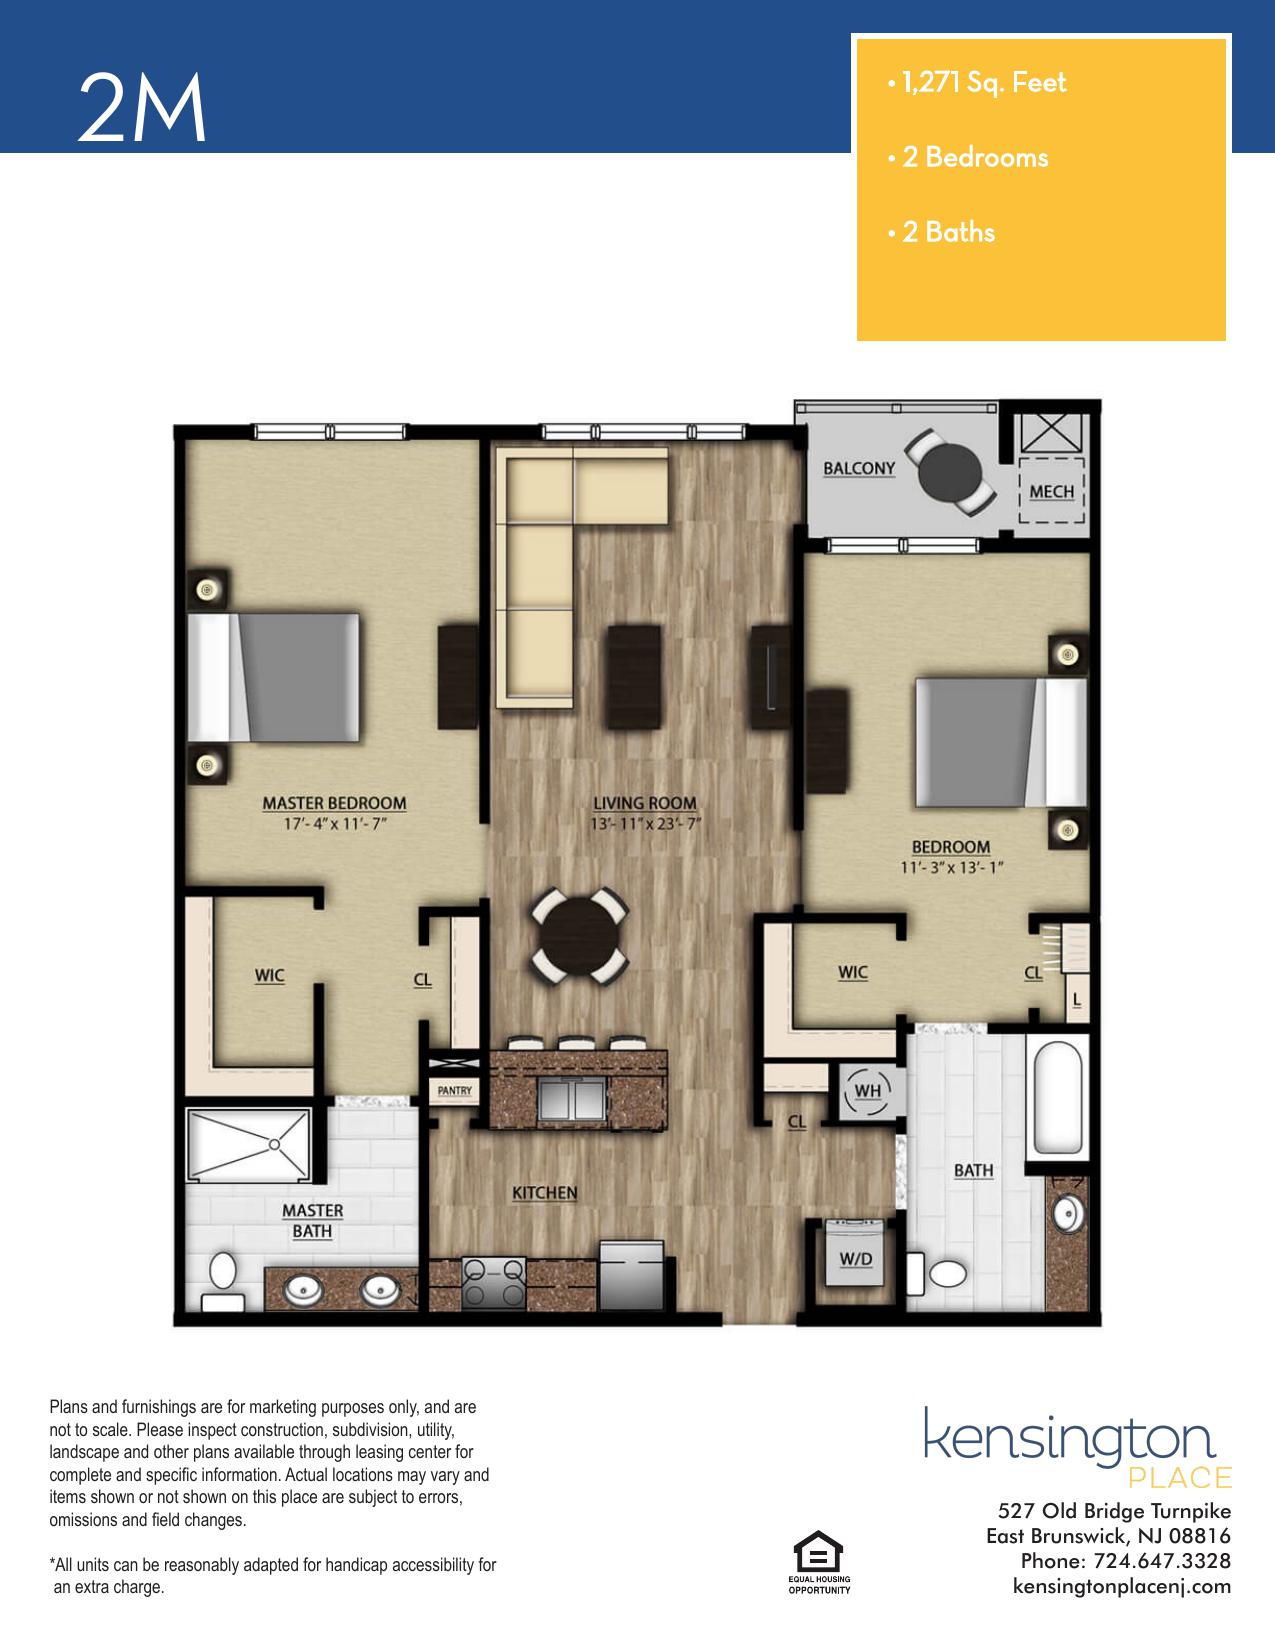 Kensington Place Apartment Floor Plan 2M